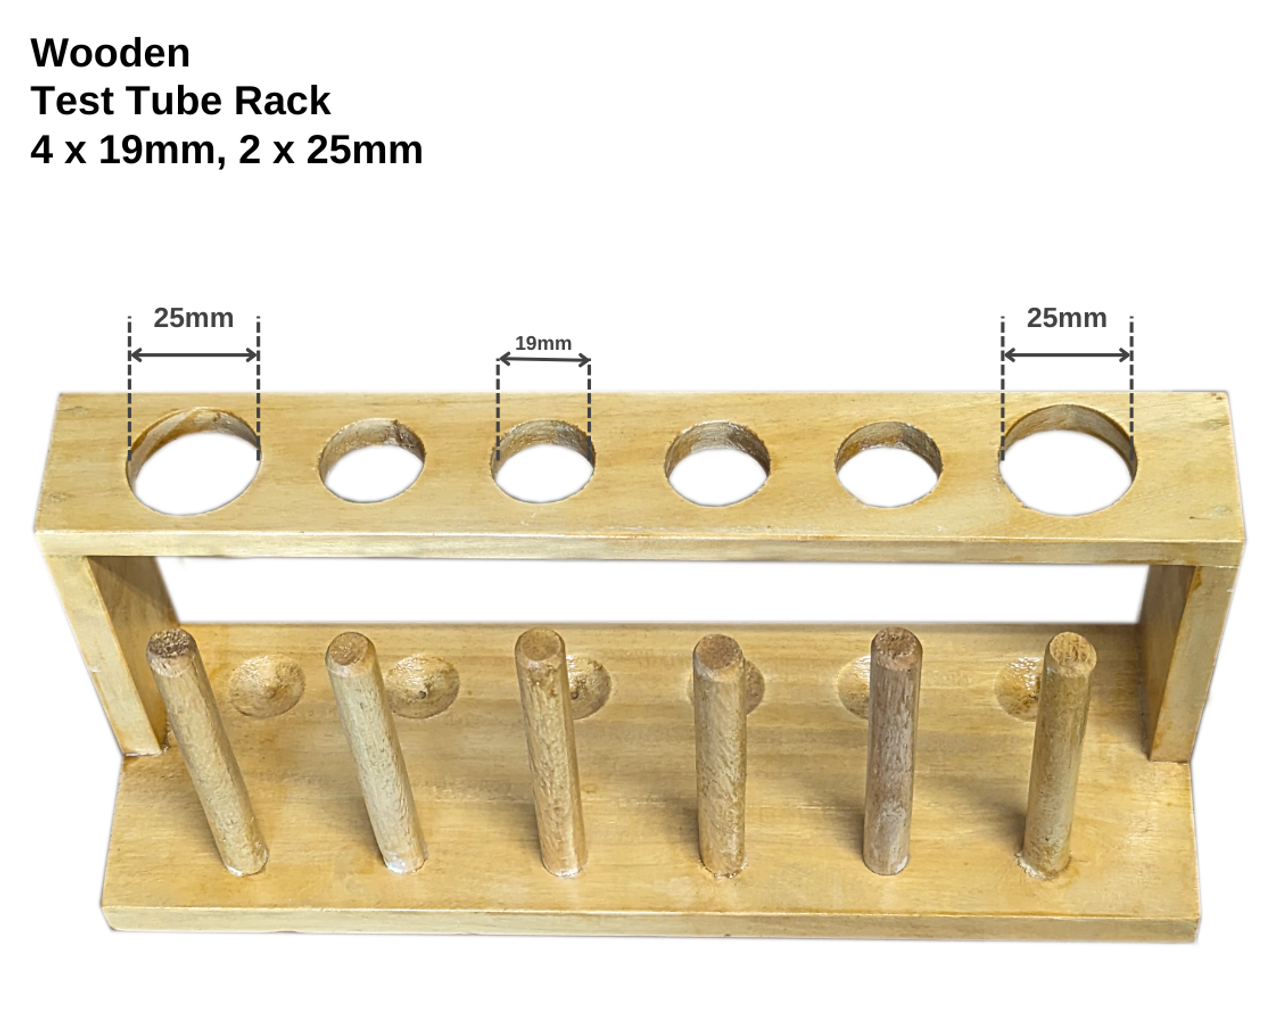 Test Tube Rack, Wooden